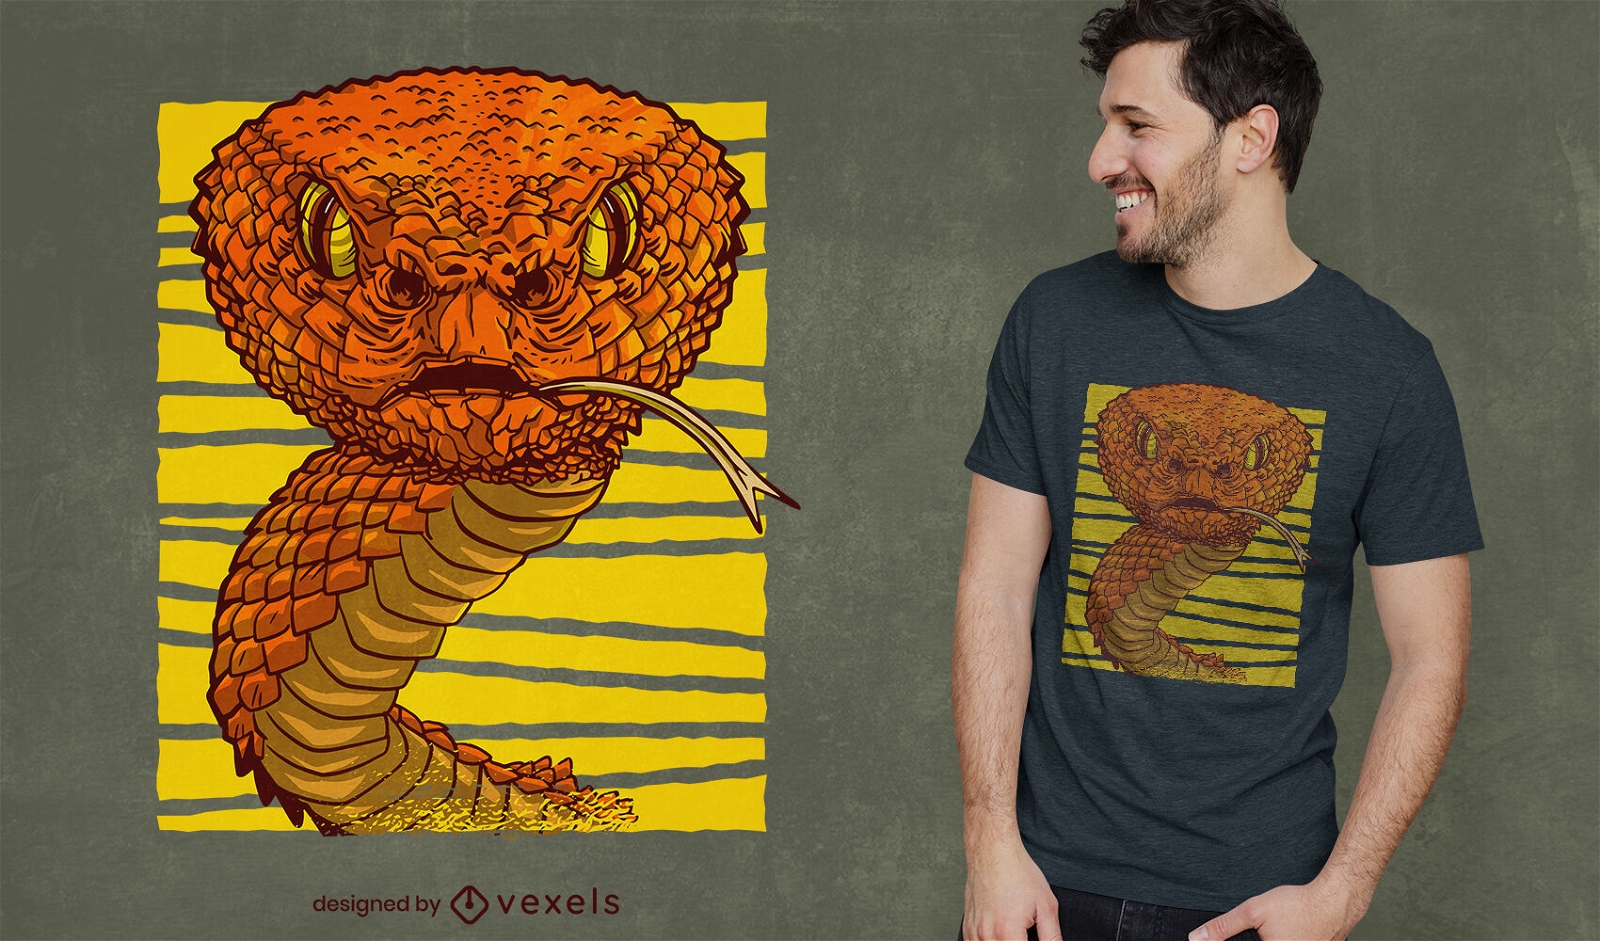 Dise?o de camiseta de animal serpiente realista.